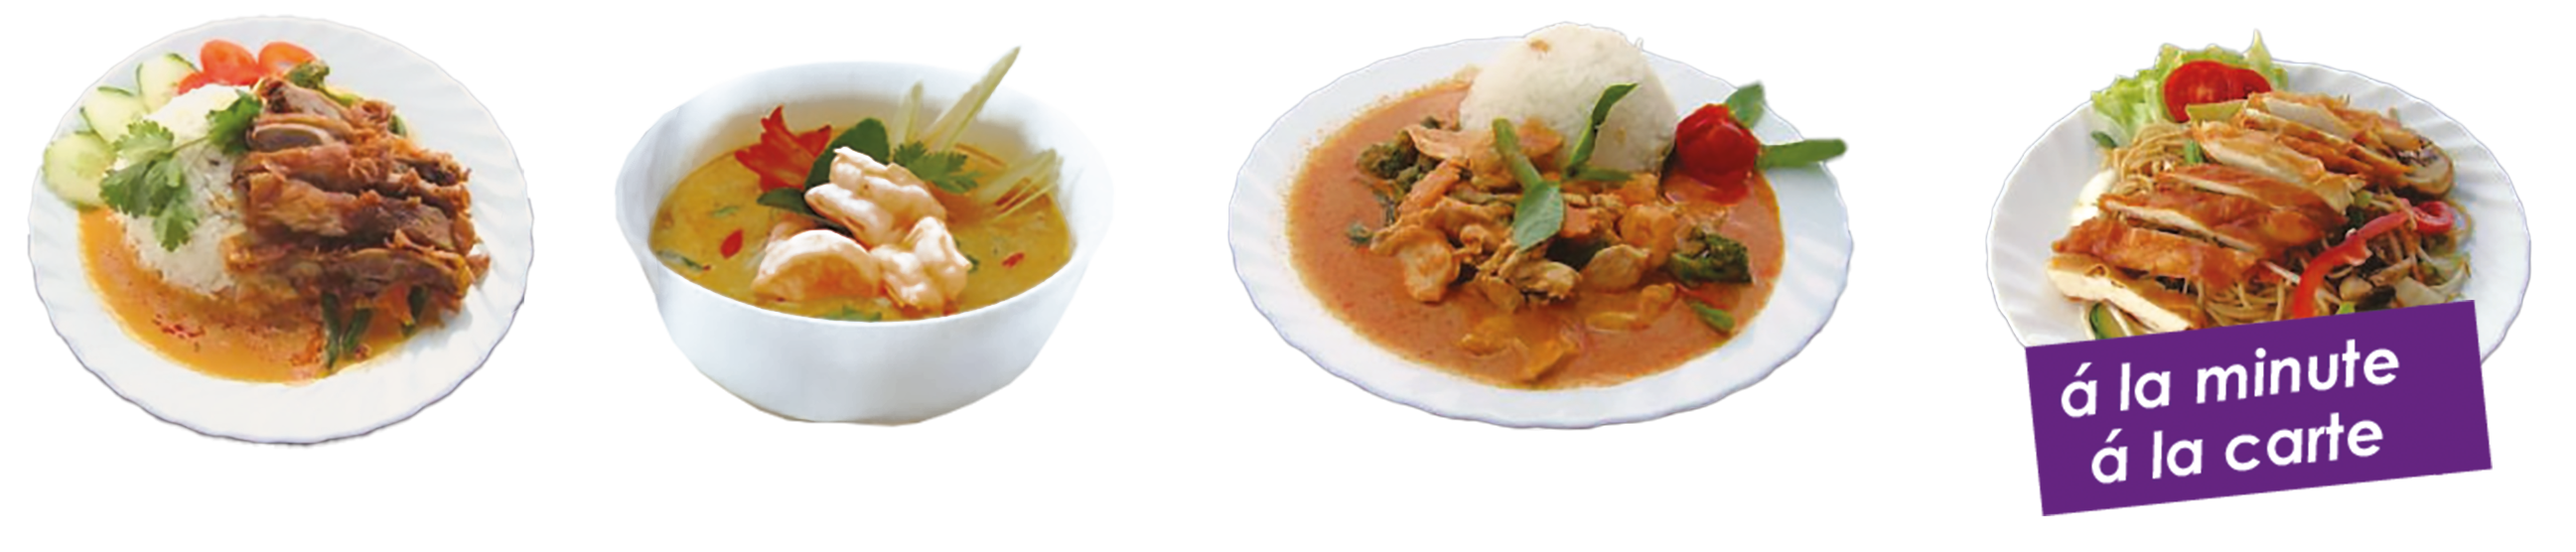 Vier thailiändische Gerichte auf Teller mit dem Hinweis "á la minute, á la carte"